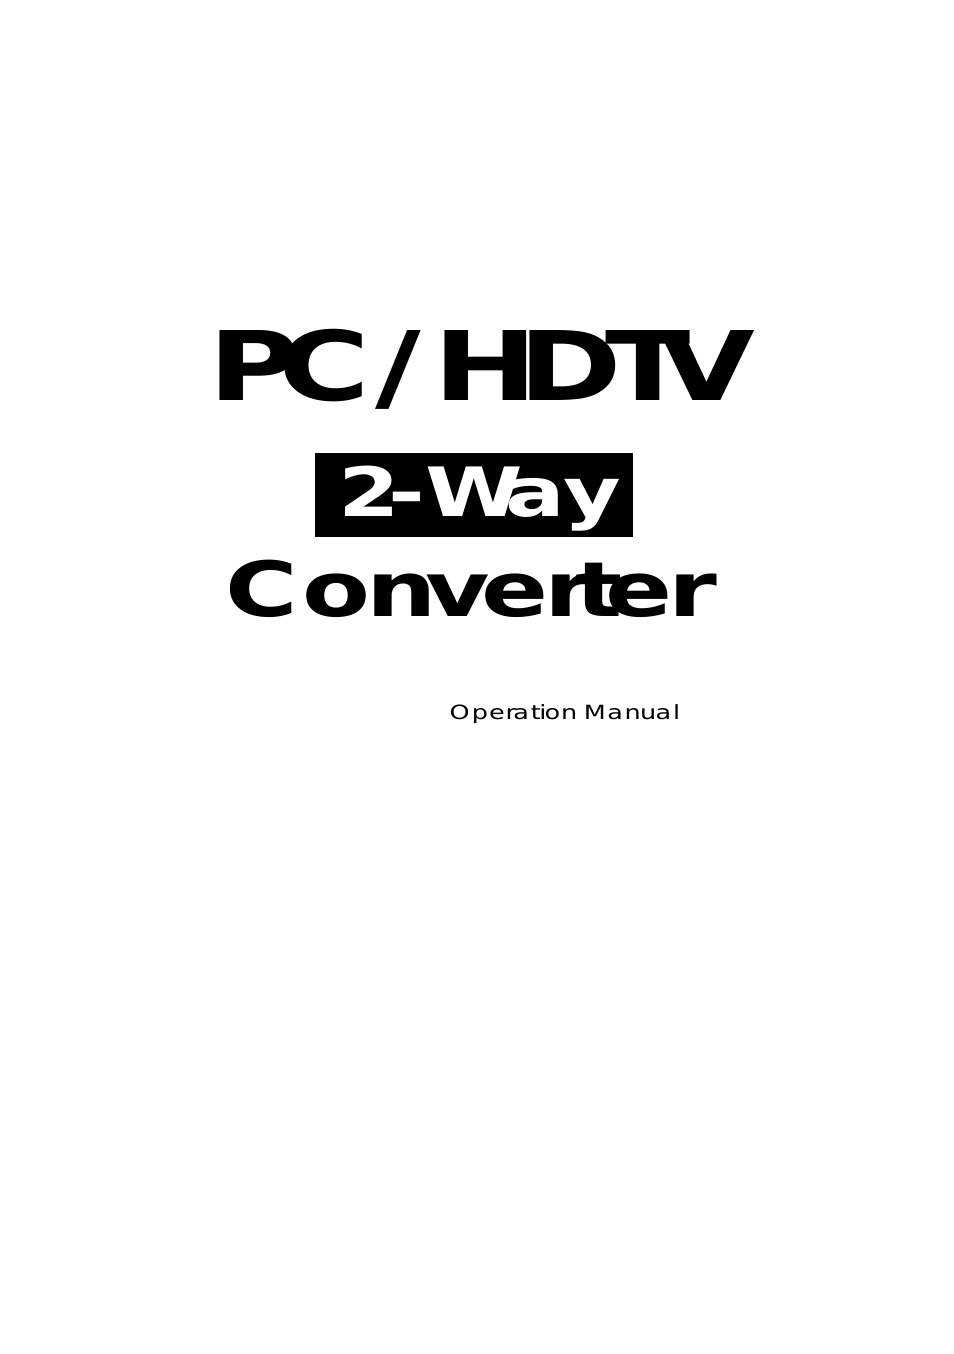 PC-HDTV-CNVTR